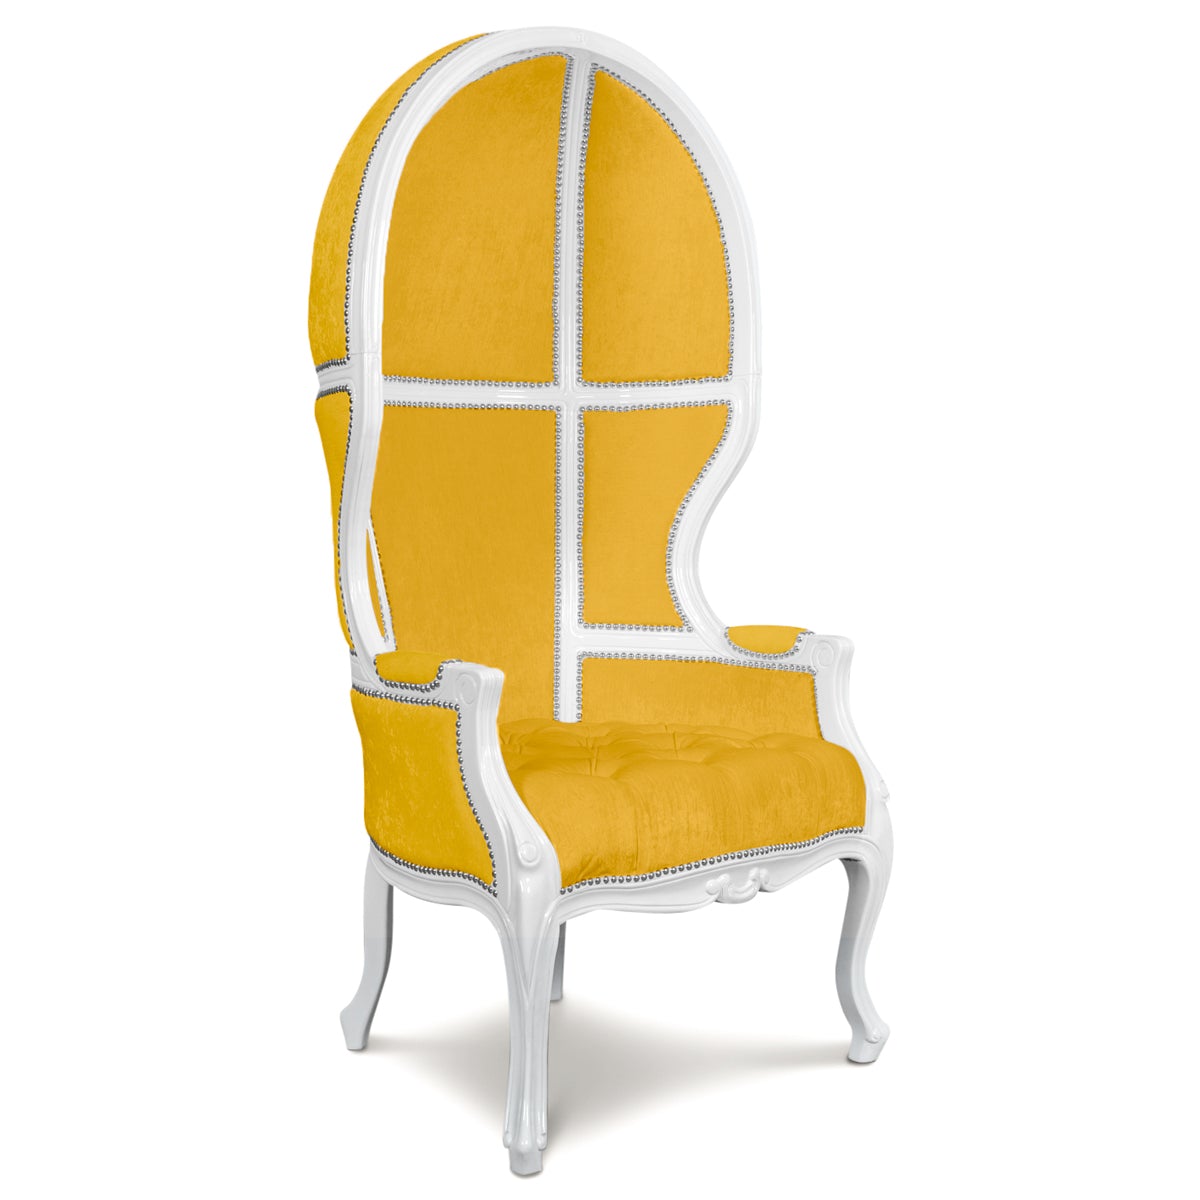 Balloon Chair in Velvet - ModShop1.com